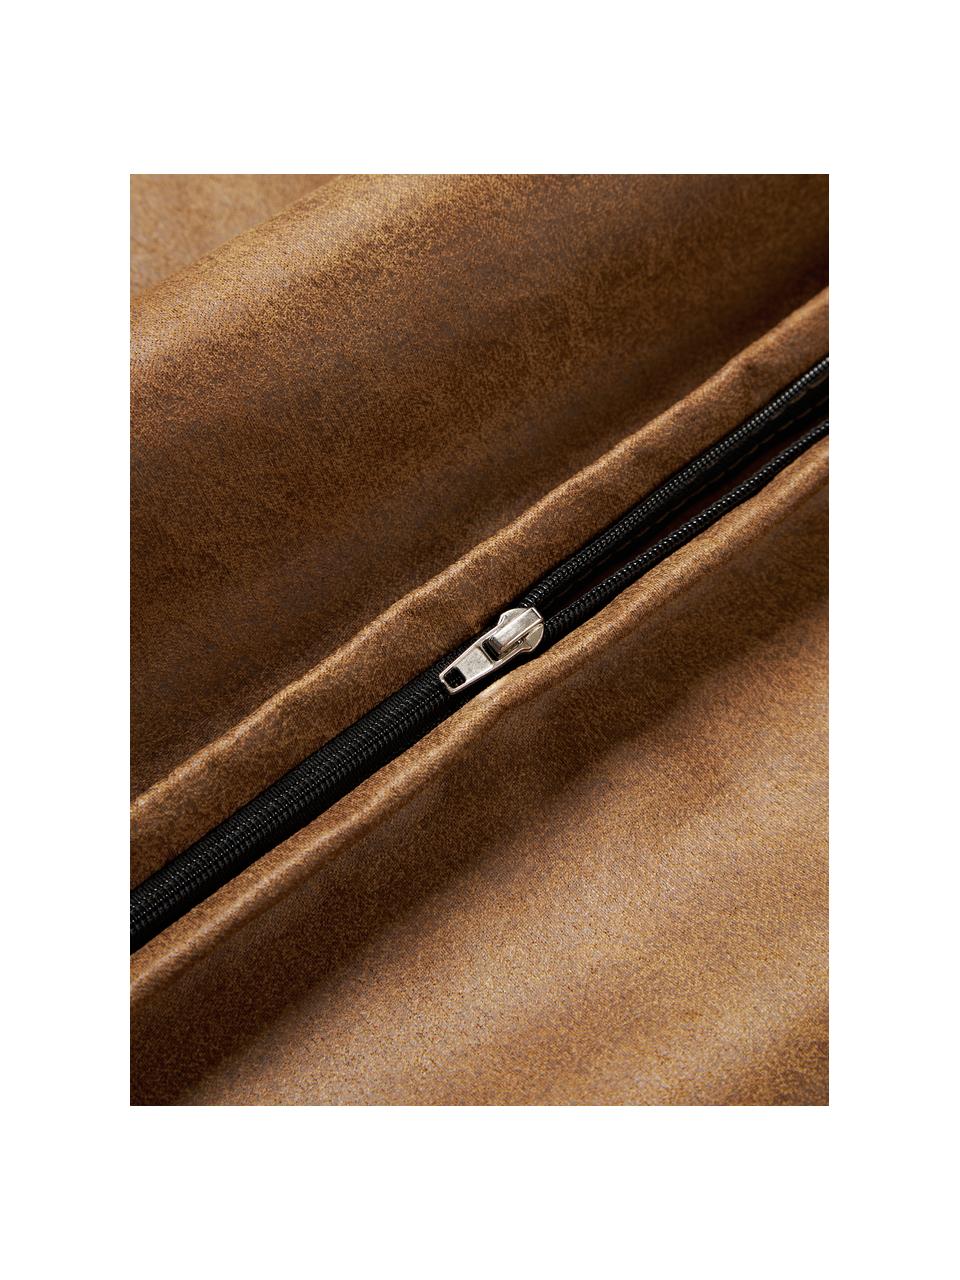 Cojín de cuero reciclado sofá Lennon, Funda: 70% cuero, 30% poliéster, Cuero marrón, An 50 x L 80 cm